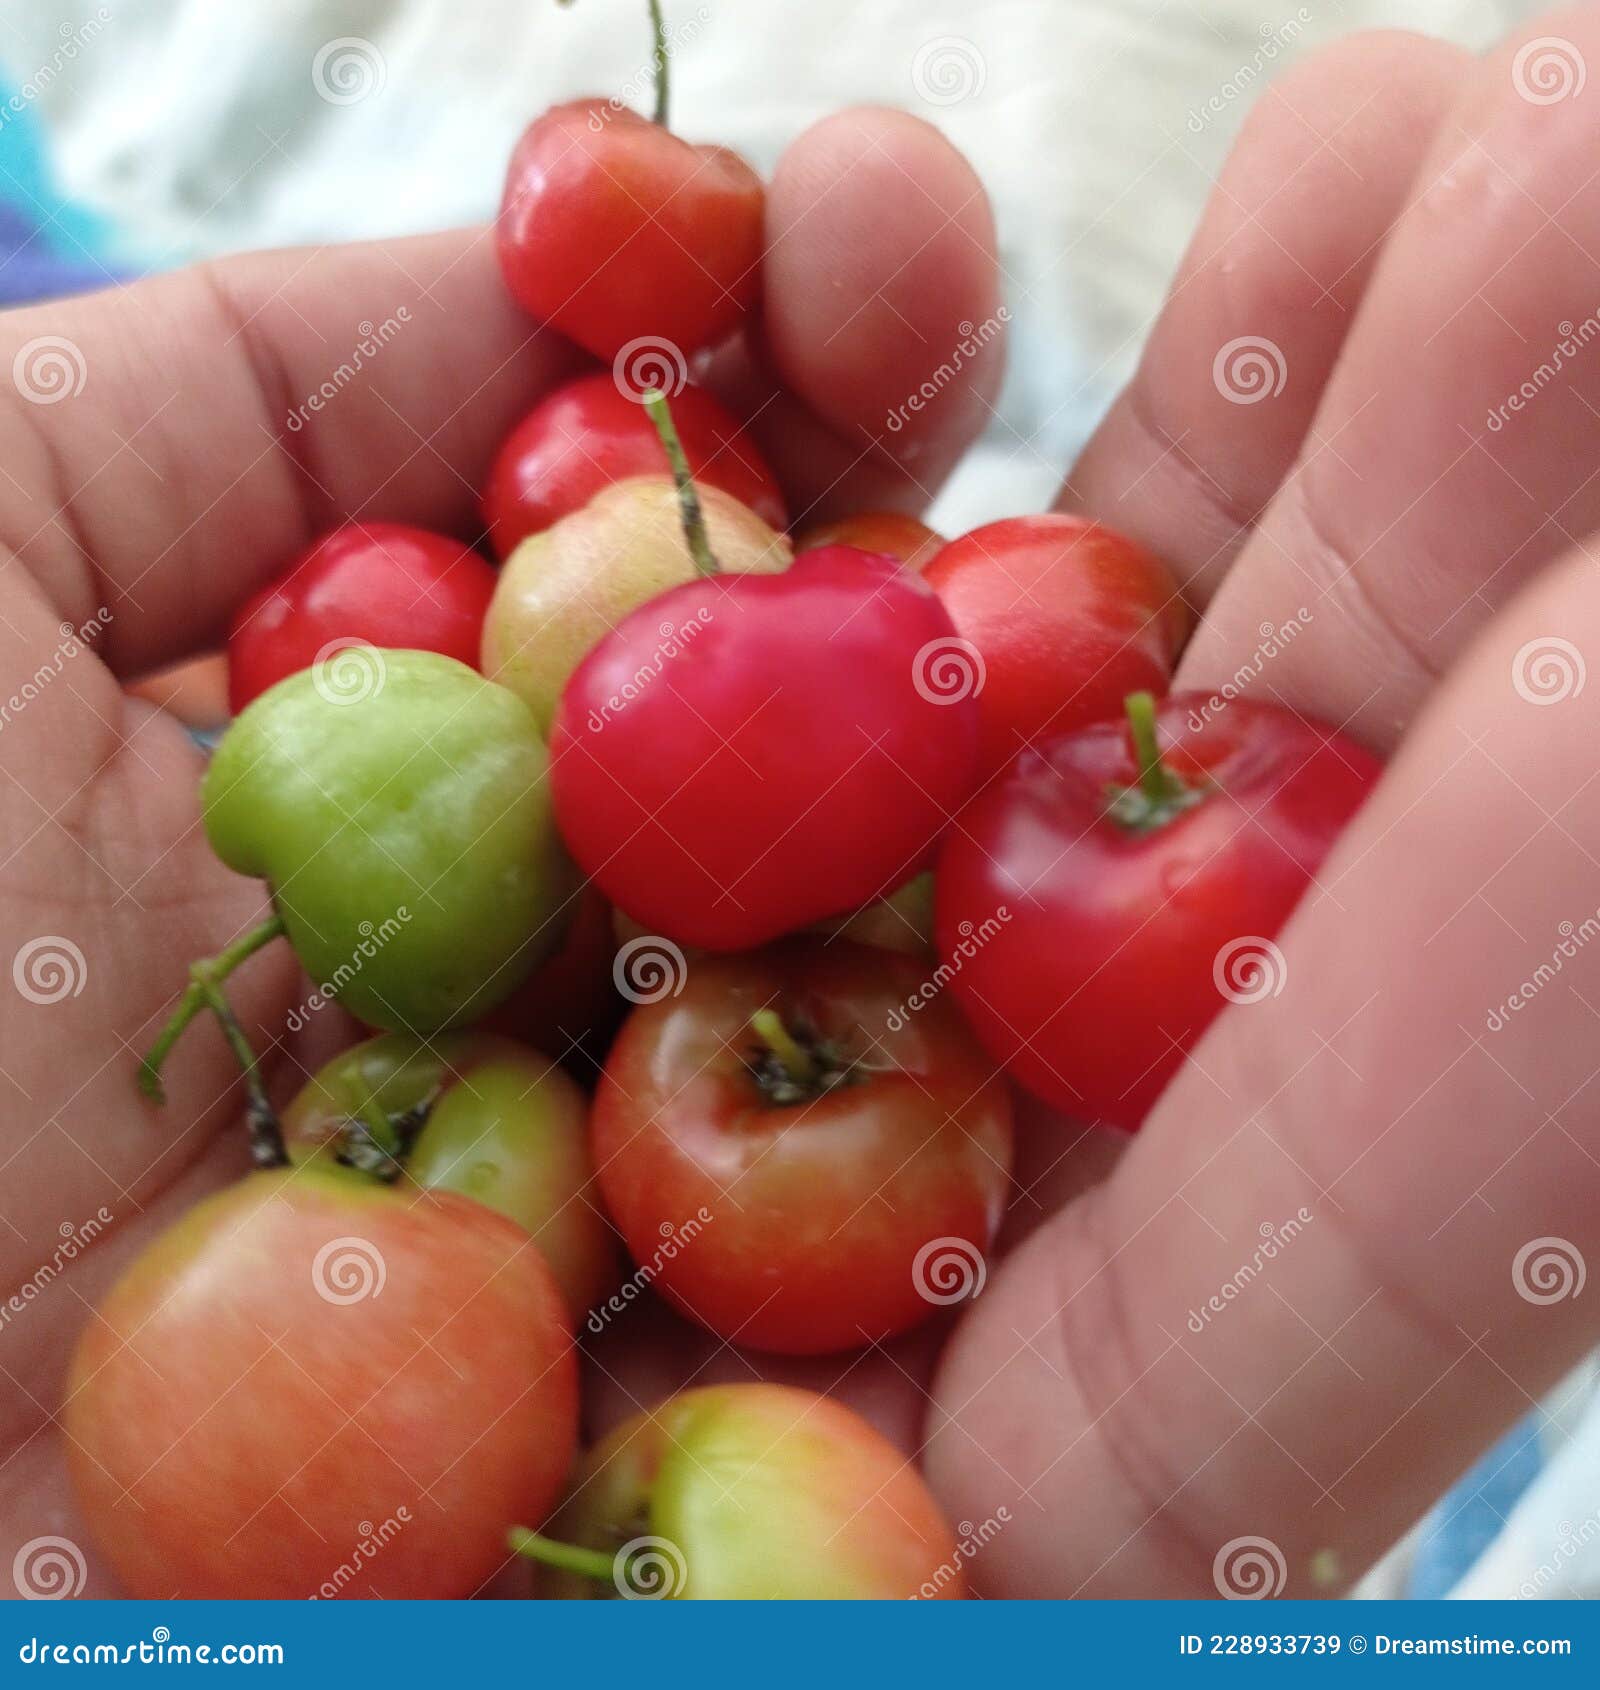 cherryes colombians